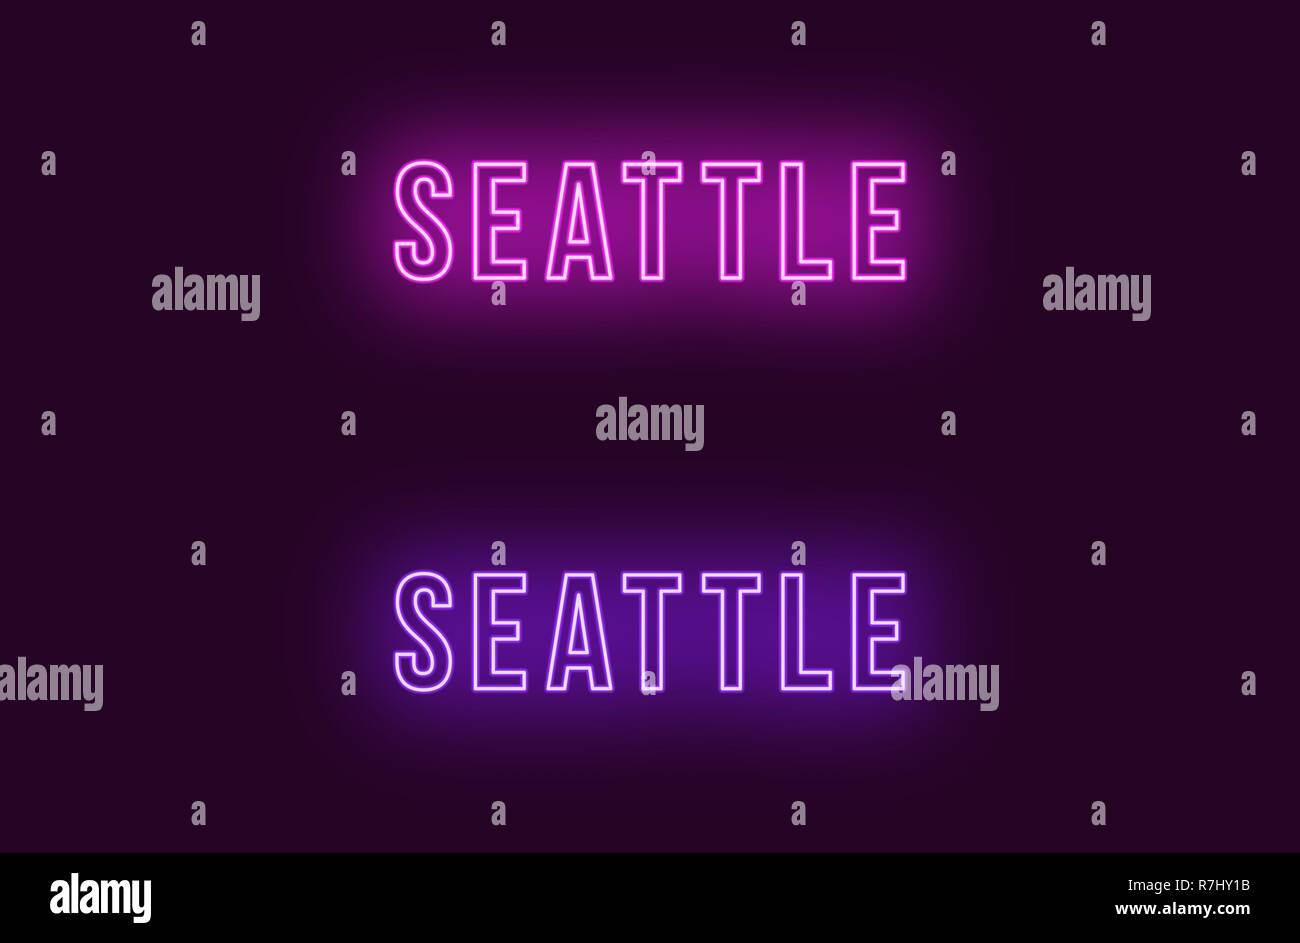 Neon Name des Seattle City in den USA. Vektor Text von Seattle, Neon Beschriftung mit Hintergrundbeleuchtung Fett Stil, Lila und violetten Farben. Isolierte glühende Ti Stock Vektor